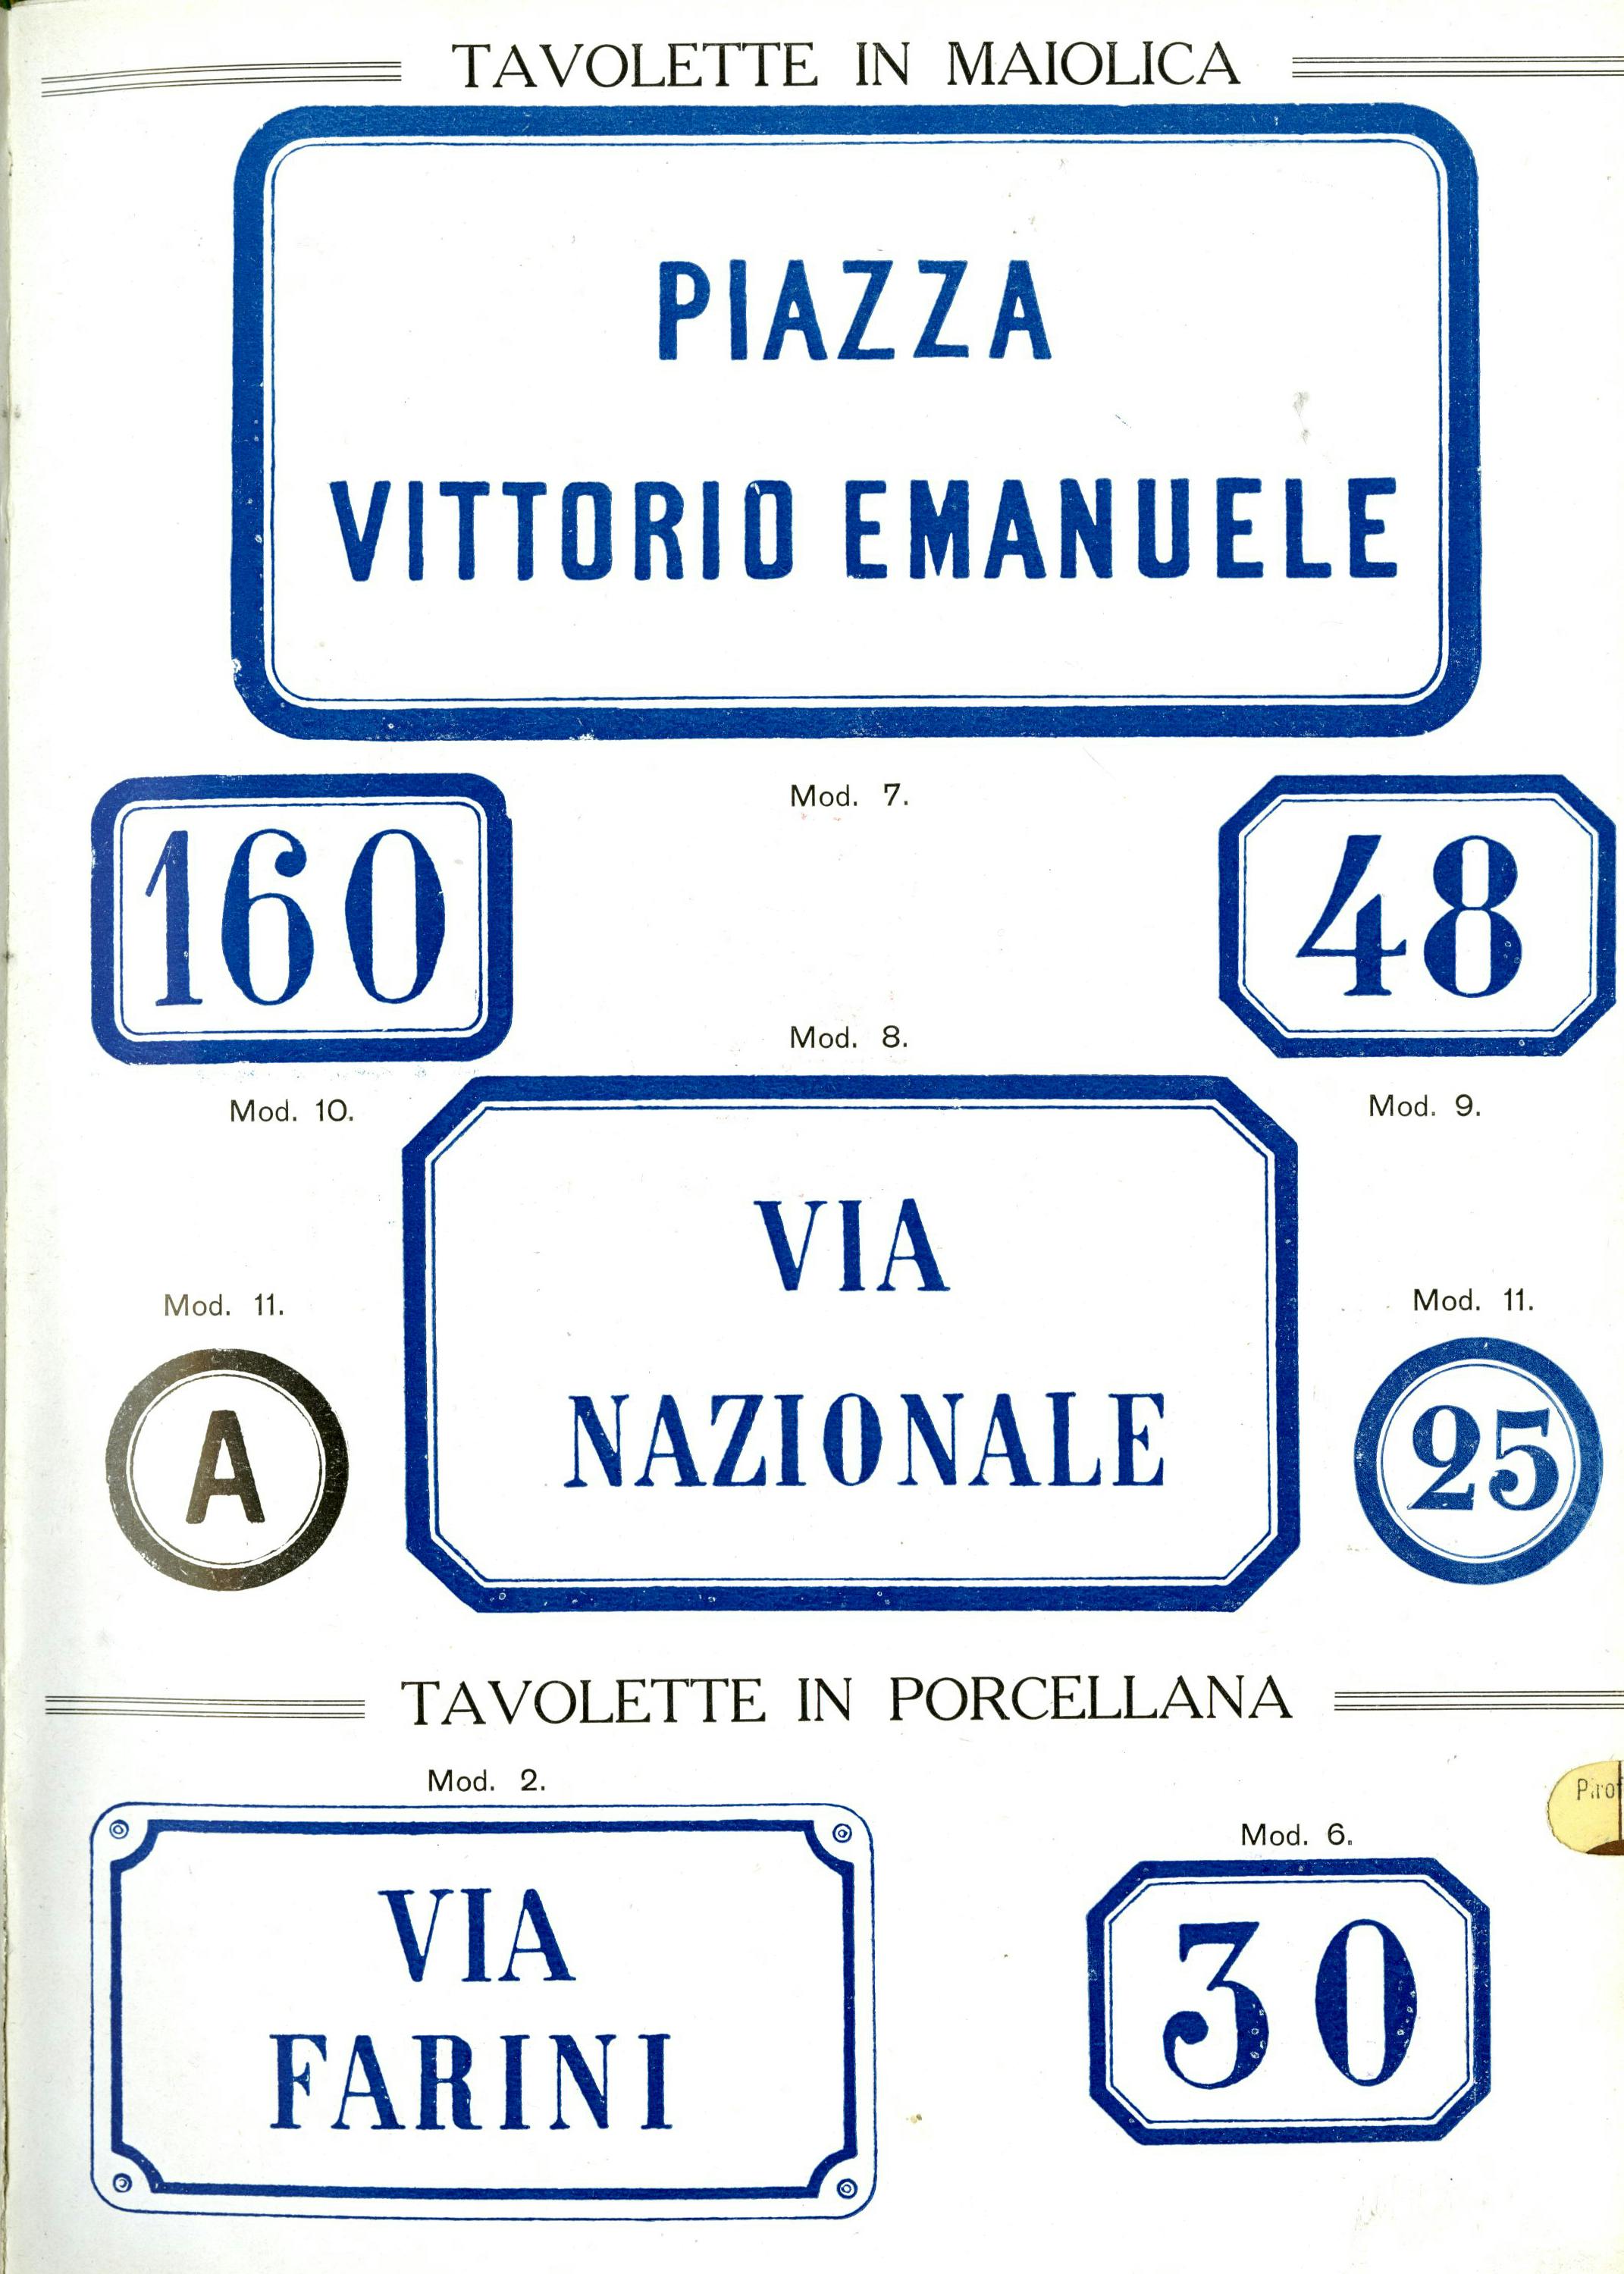 La tavola illustra cartelli in porcellana e maiolica bianca e blu con nomi di strade e numeri civici